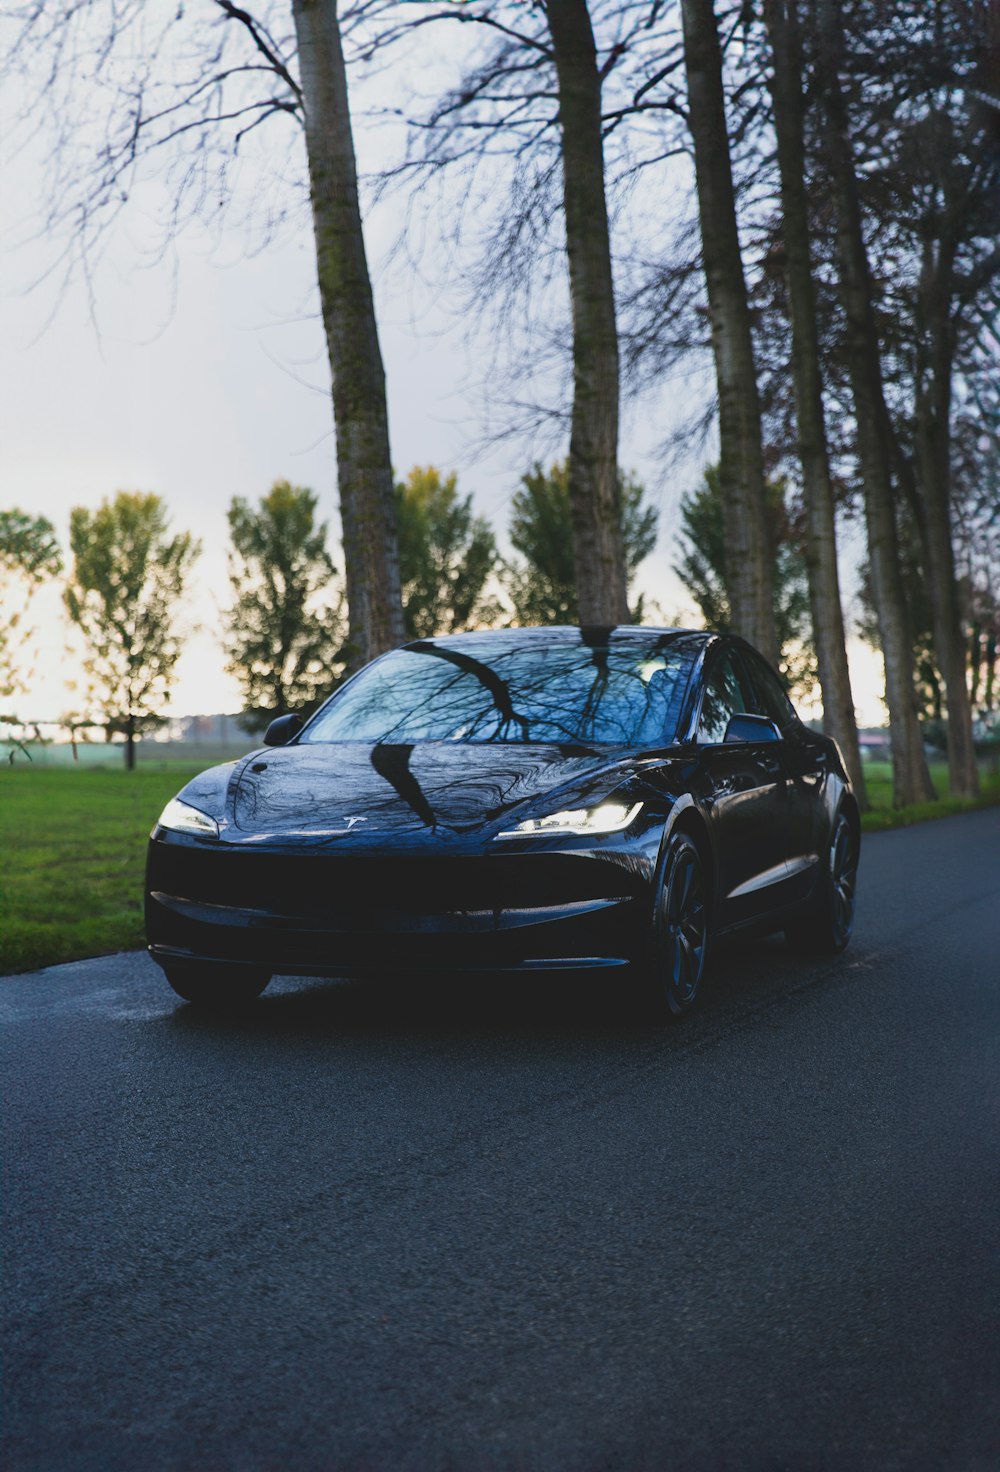 um carro esportivo preto estacionado na beira de uma estrada